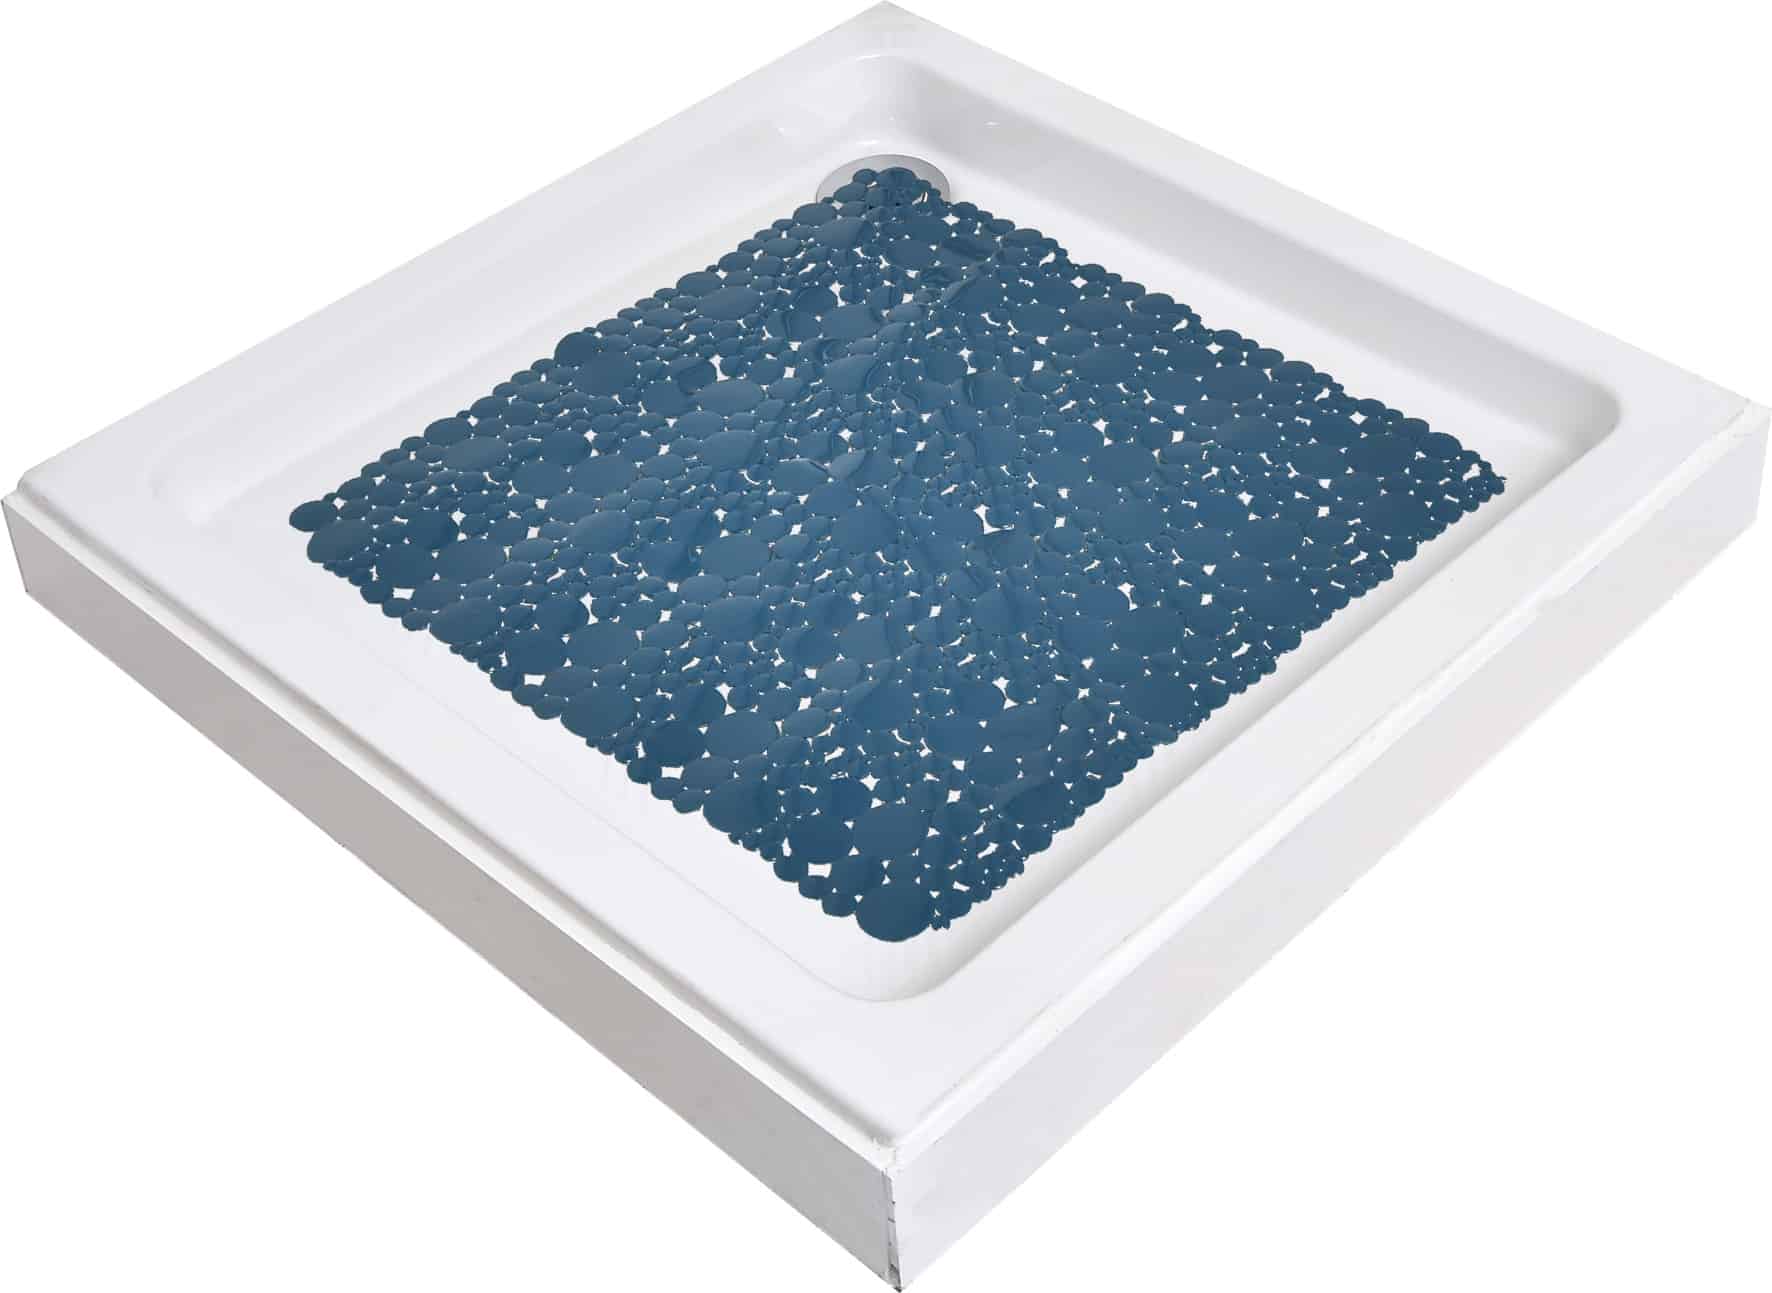 https://evideco.com/wp-content/uploads/2019/08/7216119-Non-Skid-Bath-Shower-Mat-Square-Bubbles-20-x-20-Peacock-Blue-2.jpg